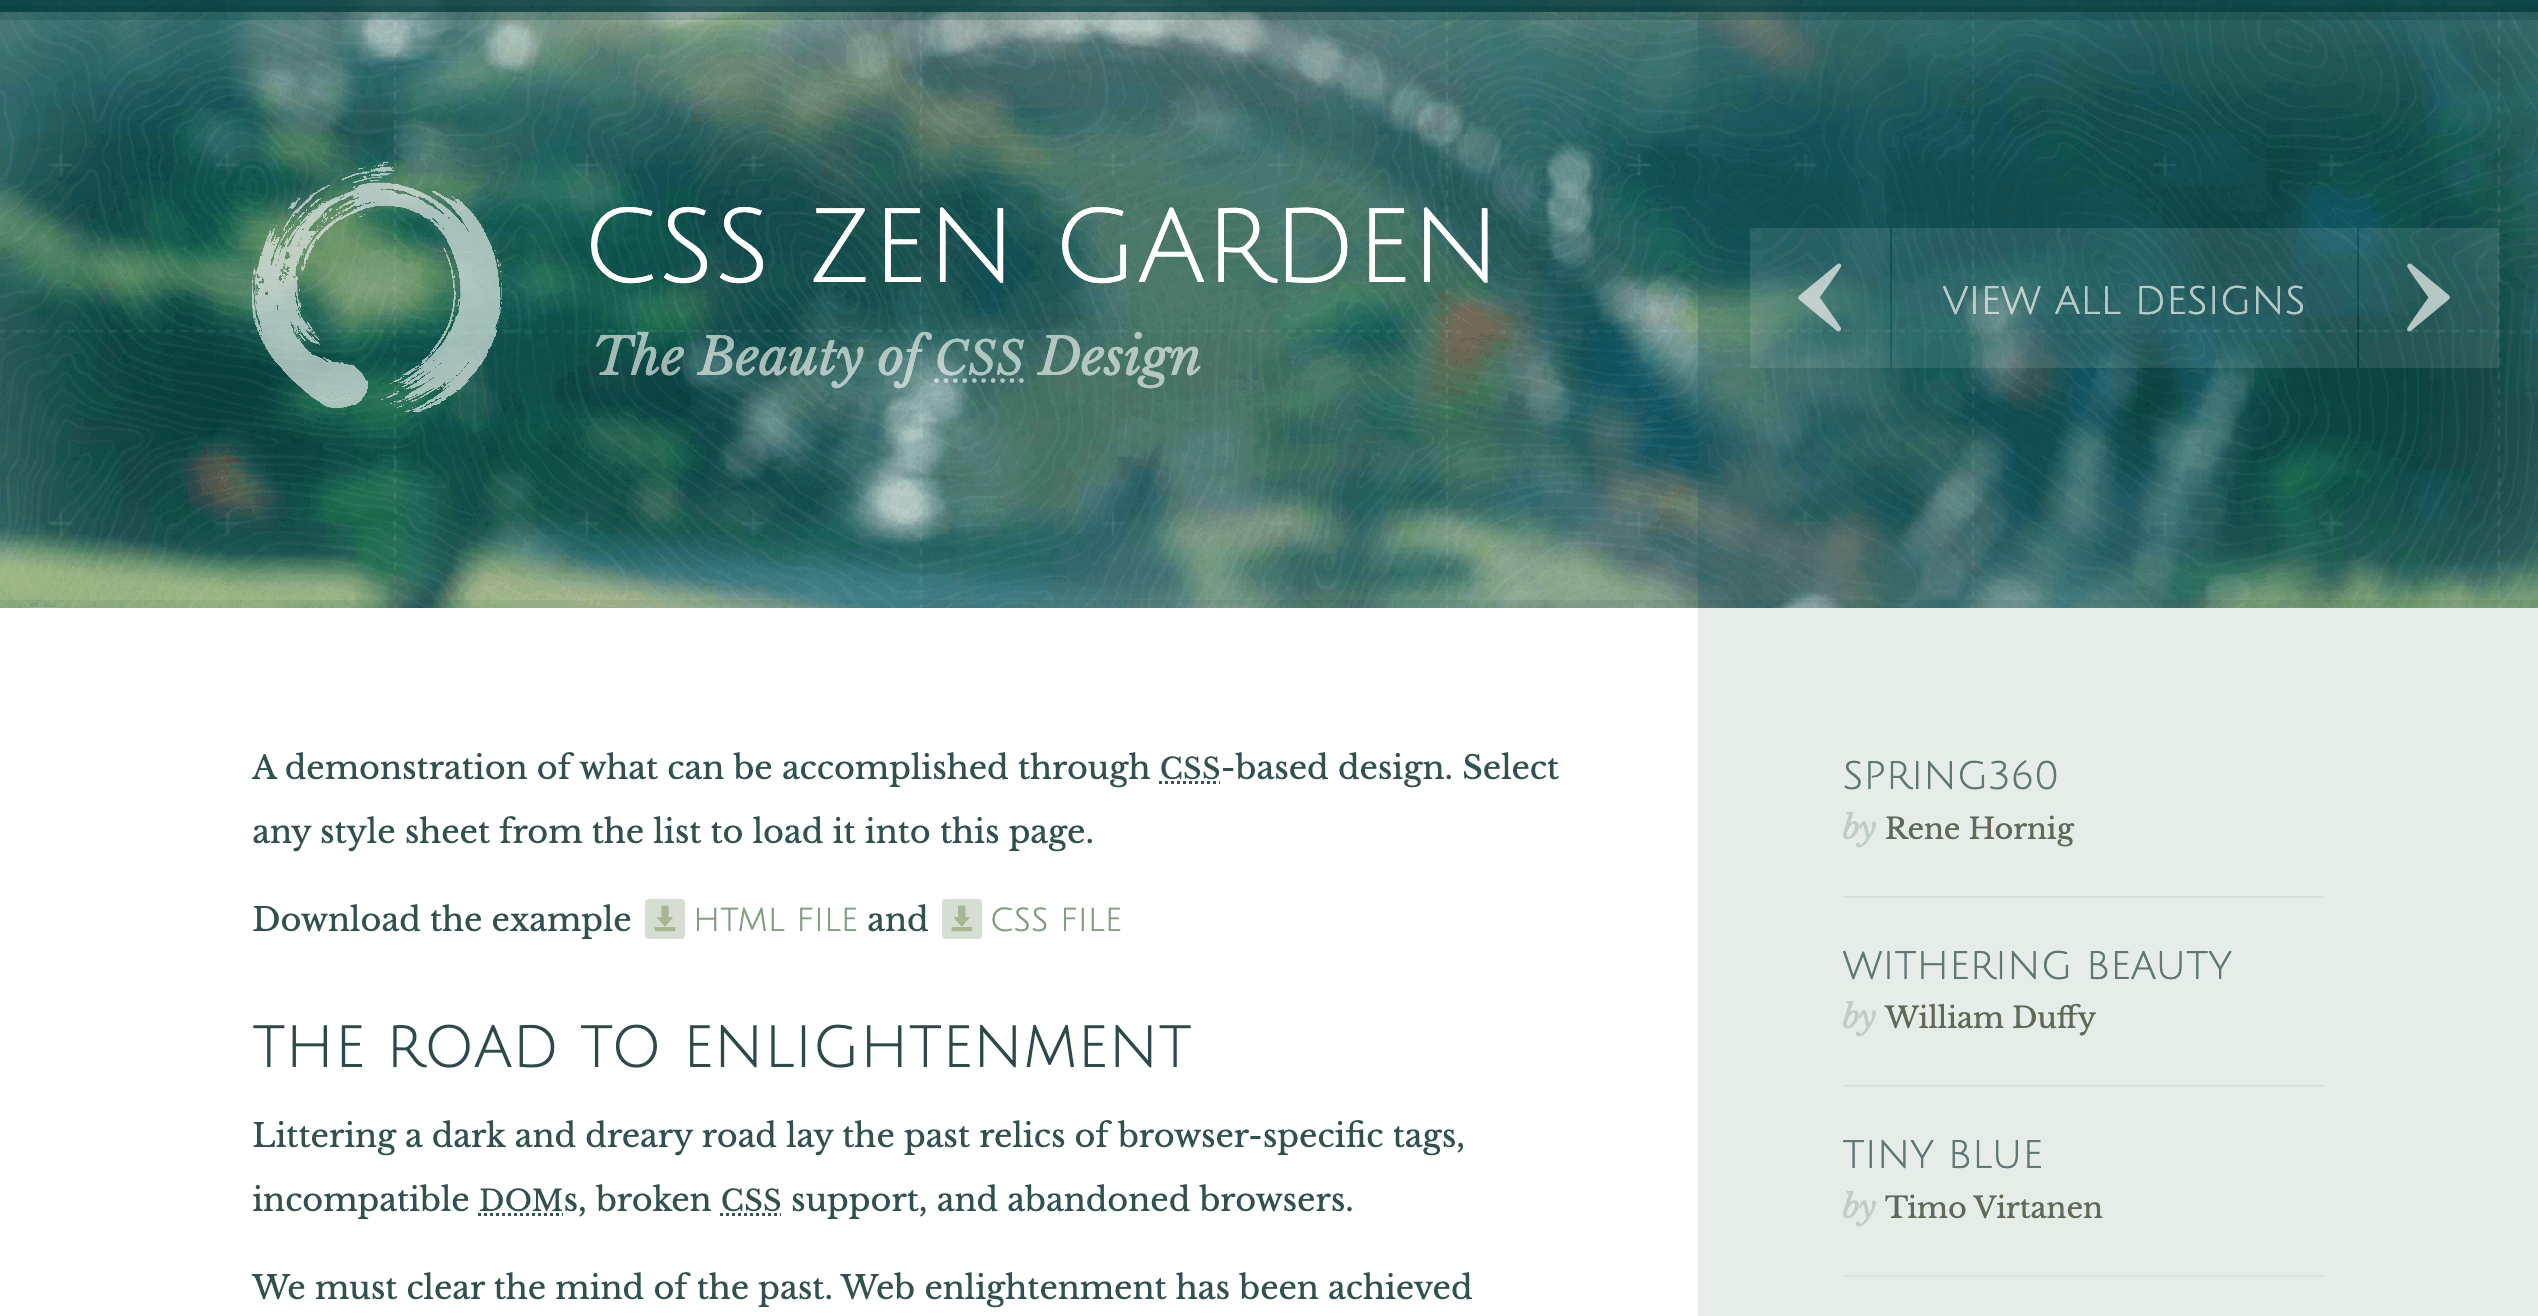 CSS Zen Garden